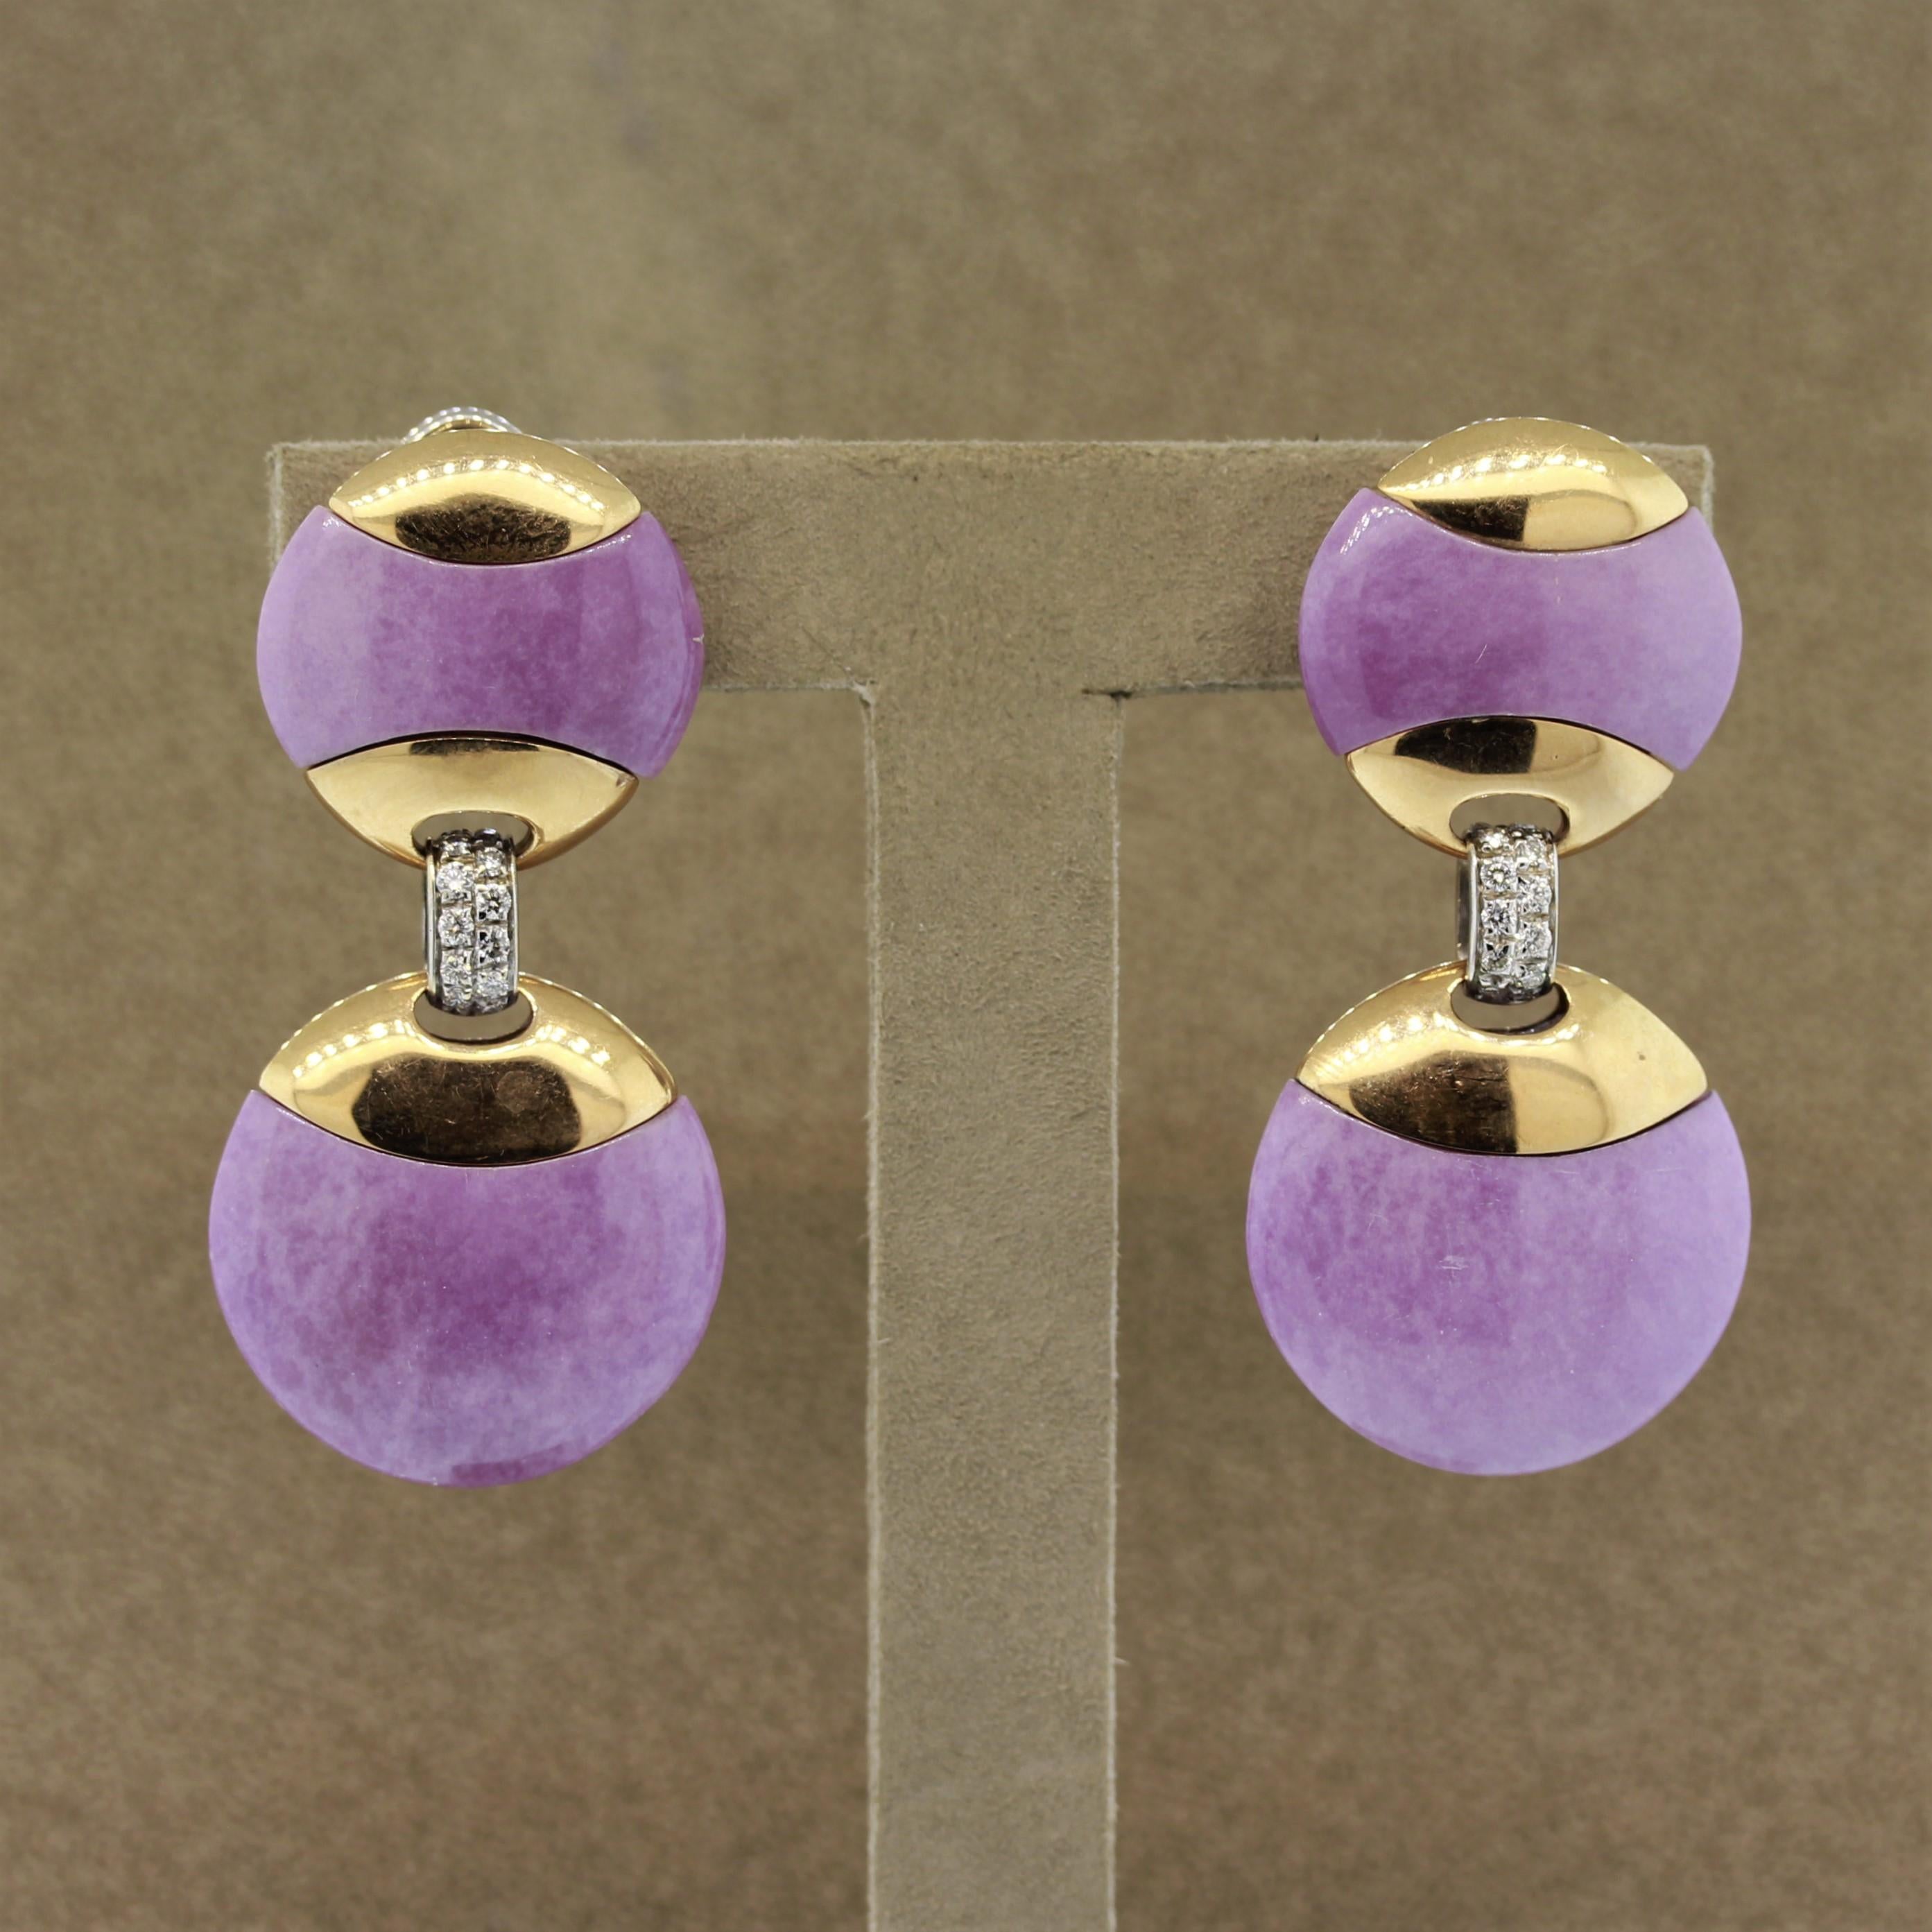 Ein einzigartiges Paar Ohrringe mit 22,40 Karat lavendelfarbener Jade, die von Hand geschnitzt und zu passenden Scheiben geformt wurde. Sie sind mit 18-karätigem Gold besetzt, das die Form vervollständigt und als Tropfen voneinander abgesetzt ist.